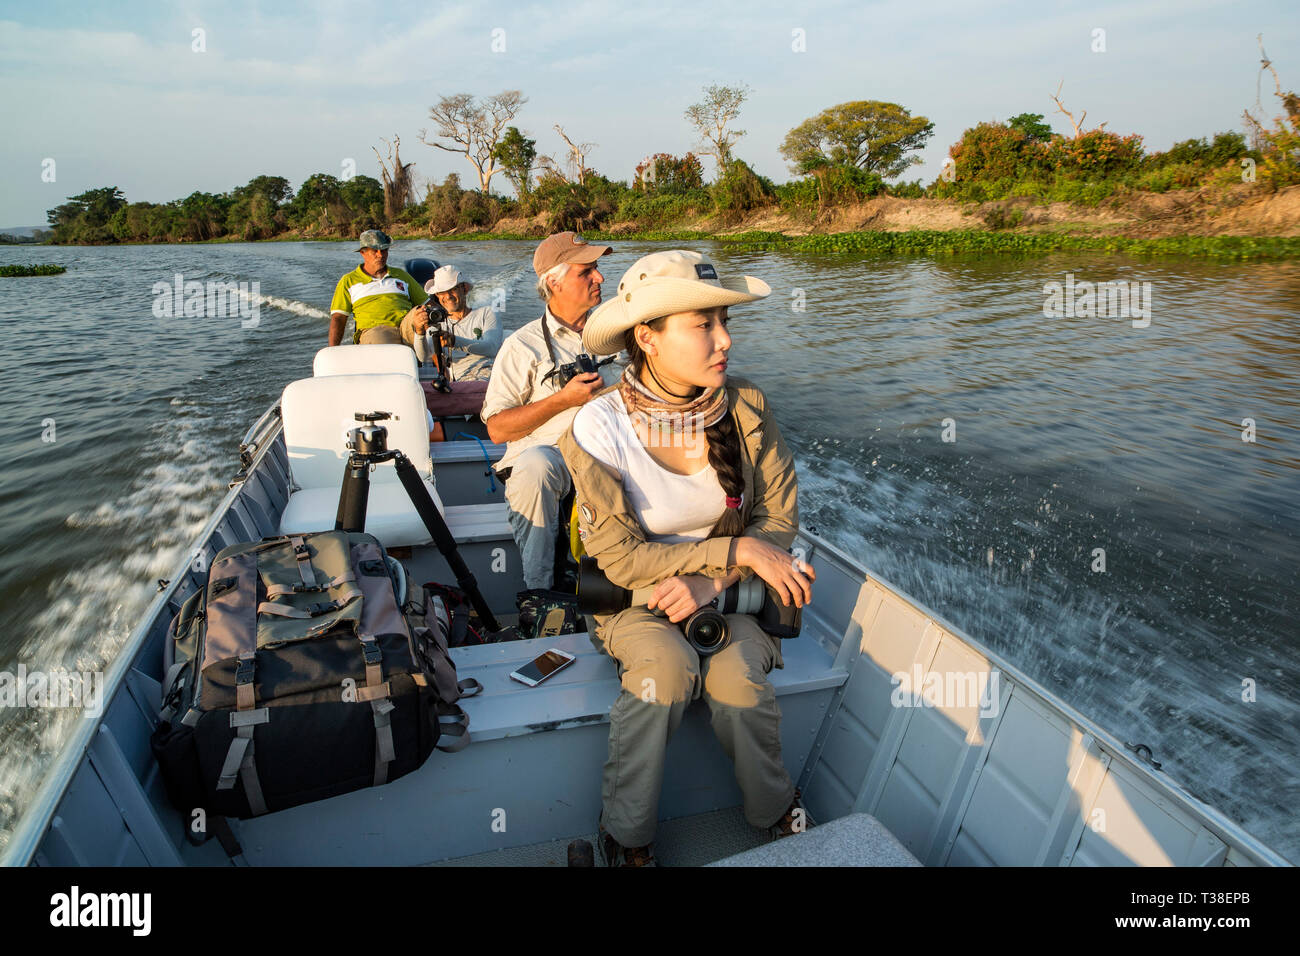 Les touristes appréciant les milieux humides, fleuve Paraguay, Pantanal, Brésil Banque D'Images